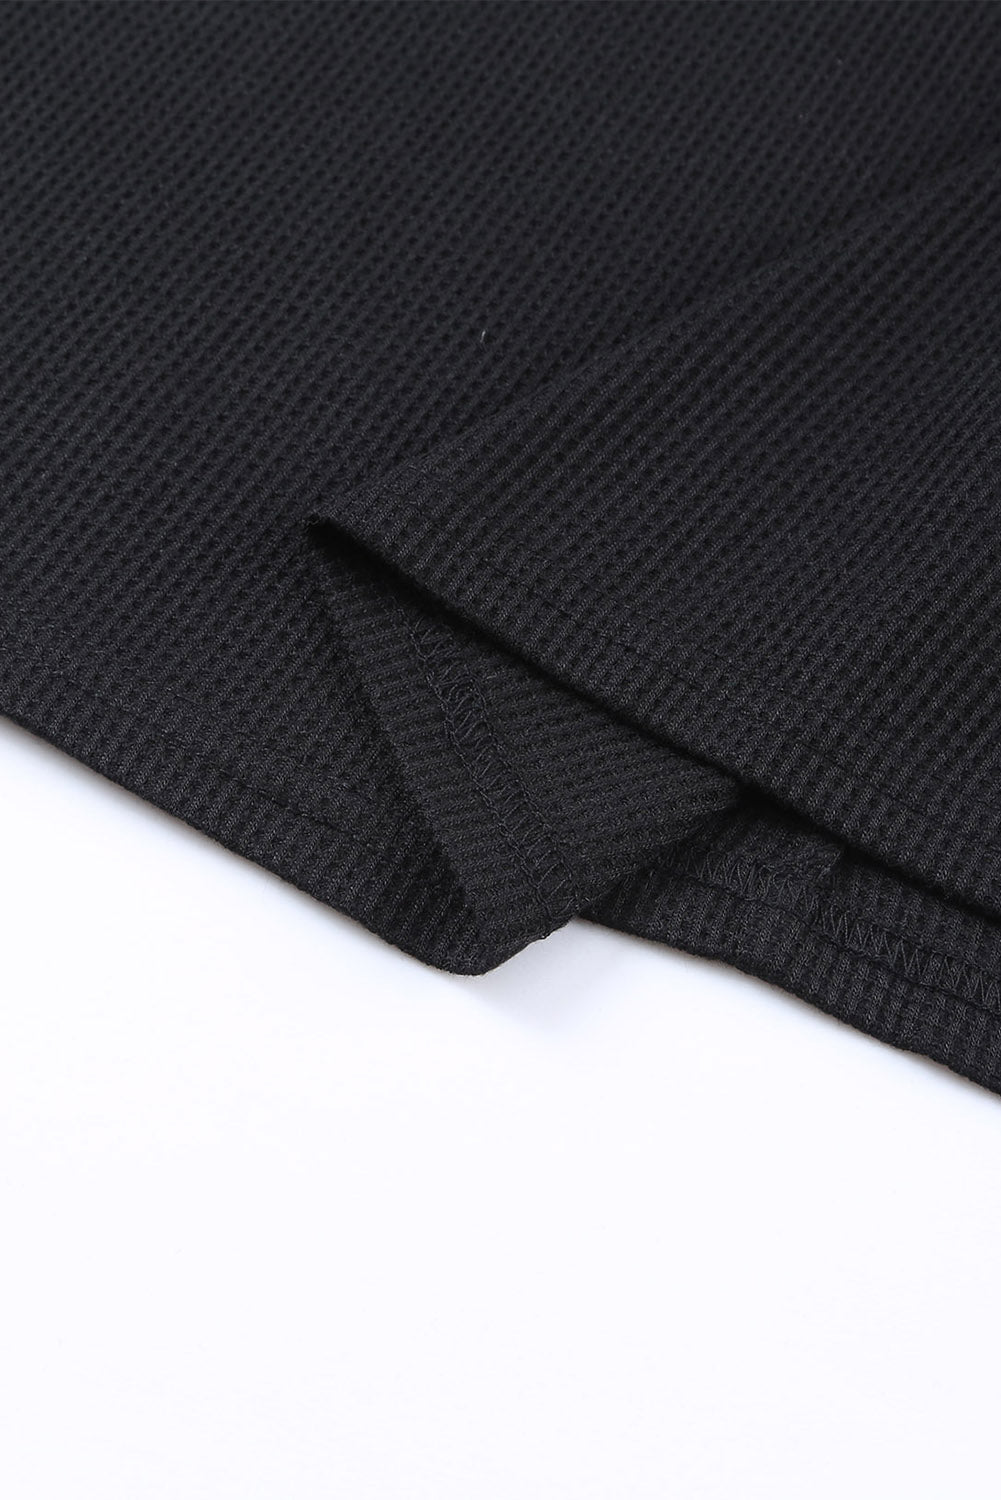 Haut noir à manches volantées et imprimé animal en tricot gaufré de grande taille